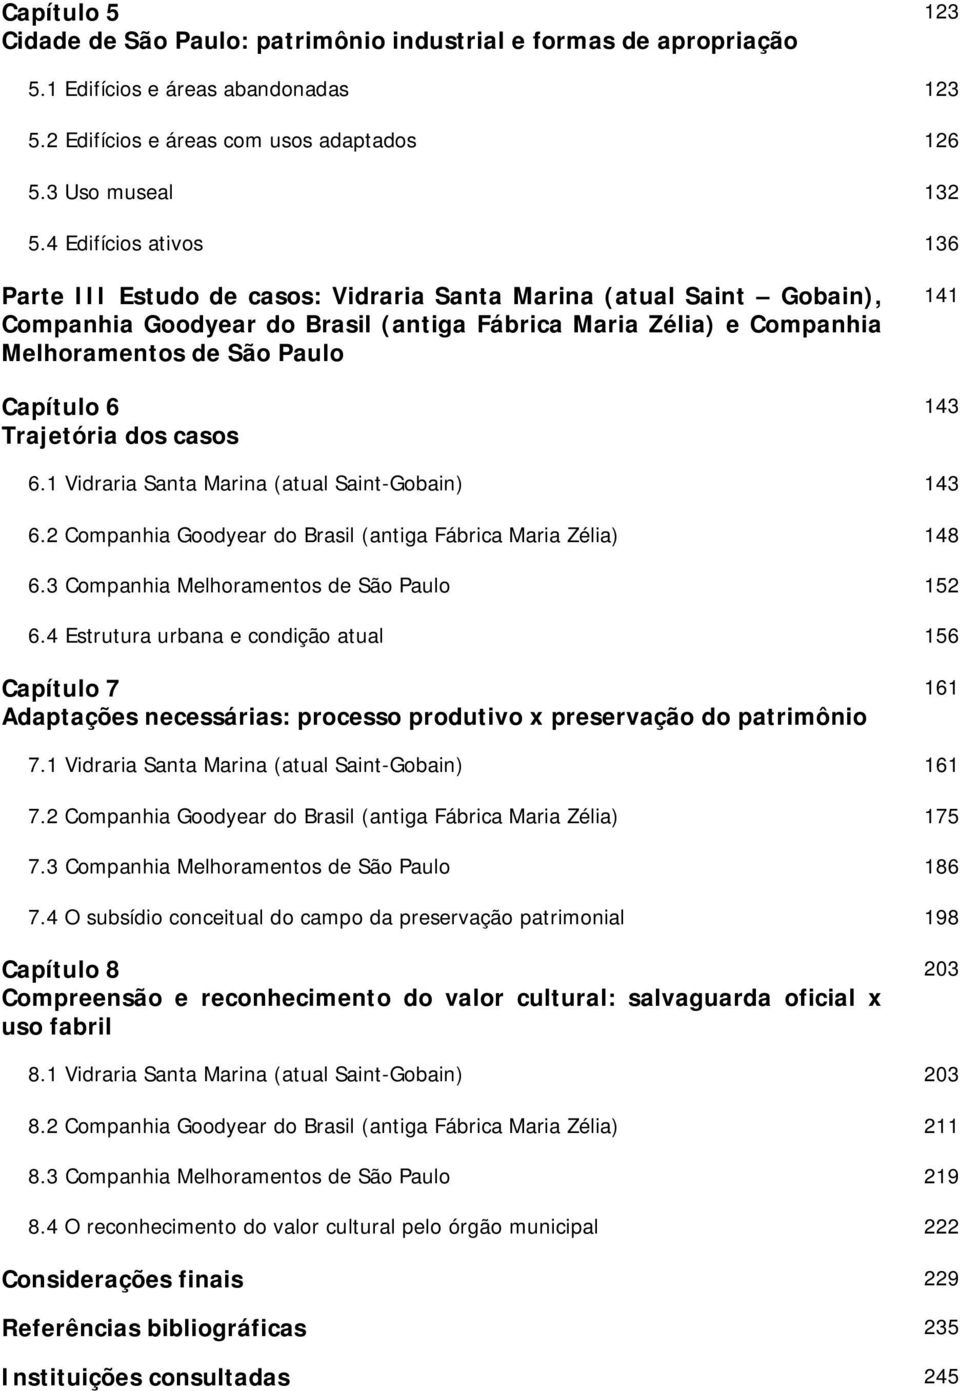 6 Trajetória dos casos 141 143 6.1 Vidraria Santa Marina (atual Saint-Gobain) 143 6.2 Companhia Goodyear do Brasil (antiga Fábrica Maria Zélia) 148 6.3 Companhia Melhoramentos de São Paulo 152 6.